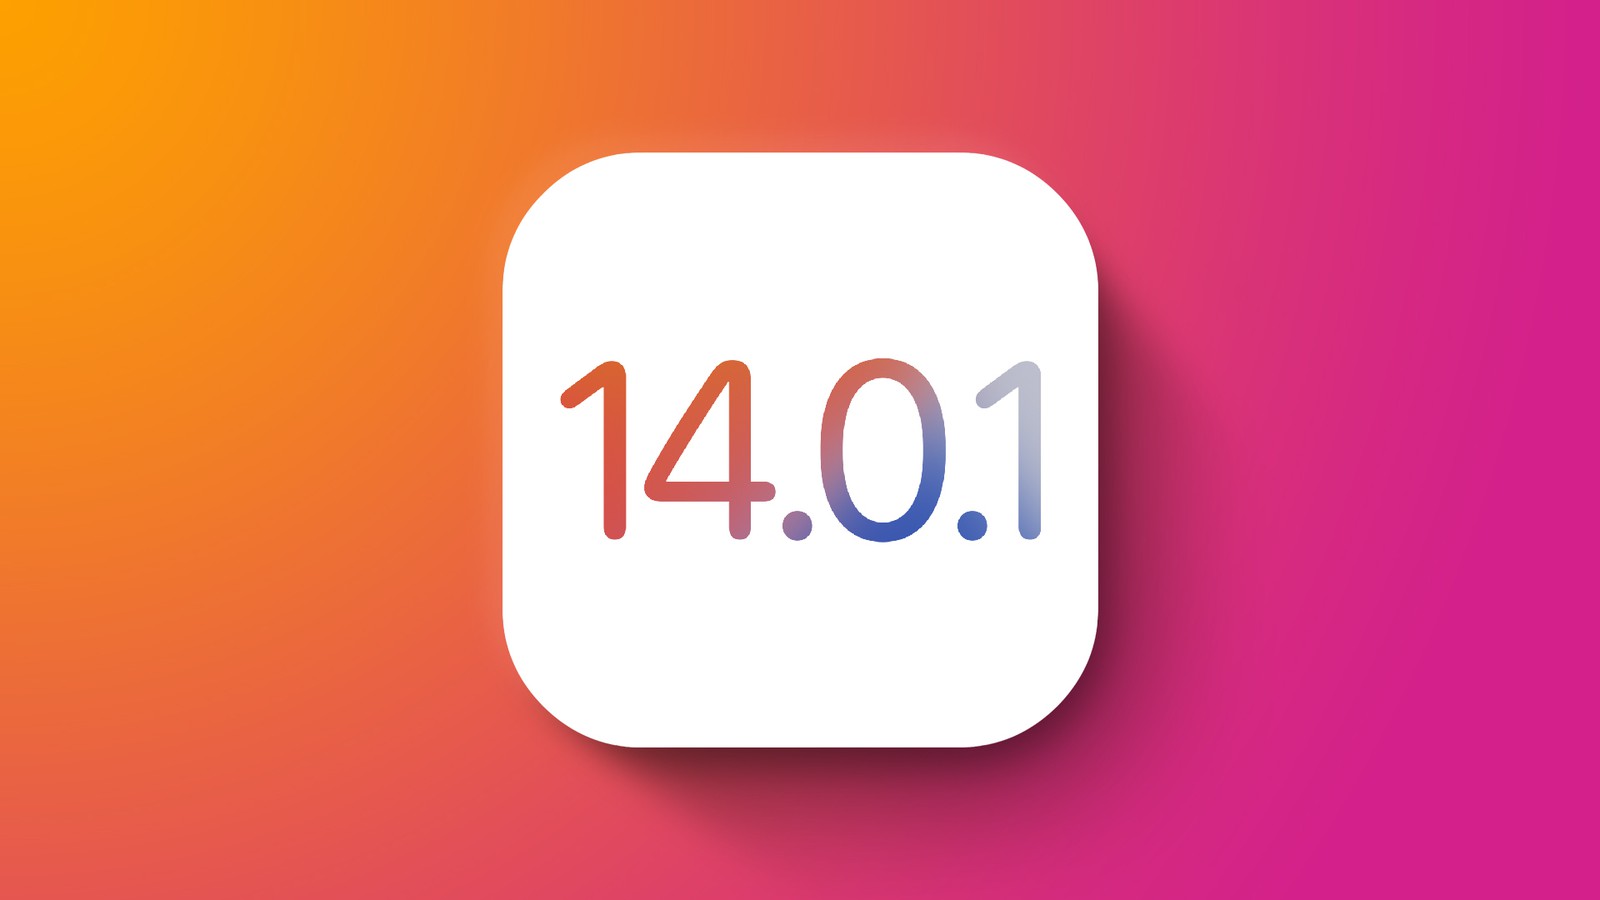 iOS 14.0.1